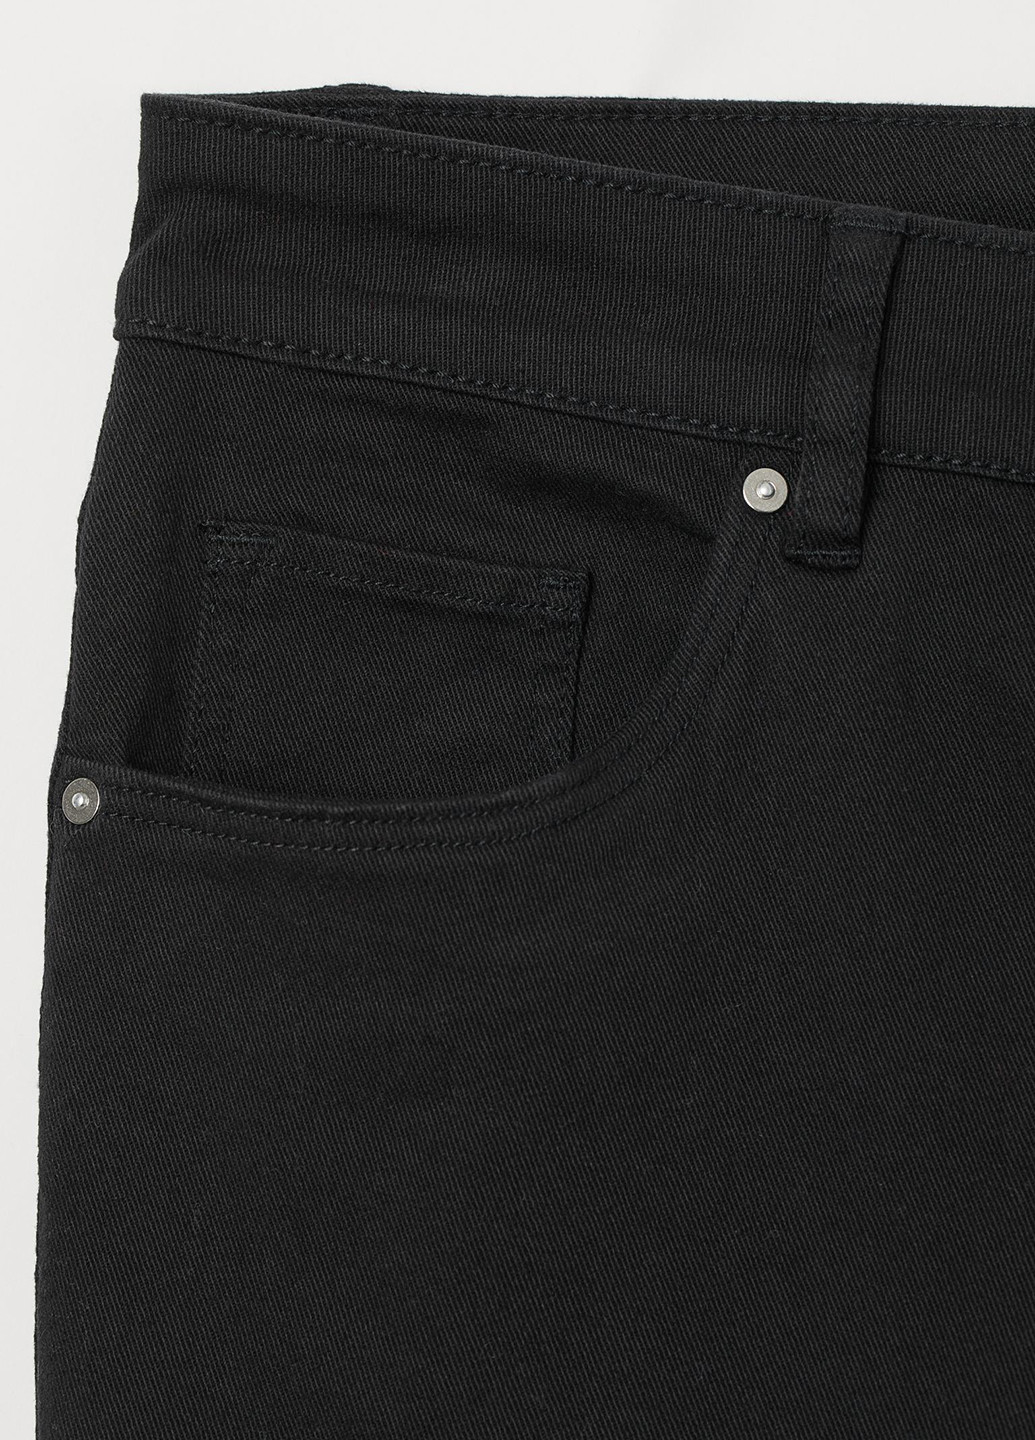 Черные джинсовые демисезонные зауженные брюки H&M